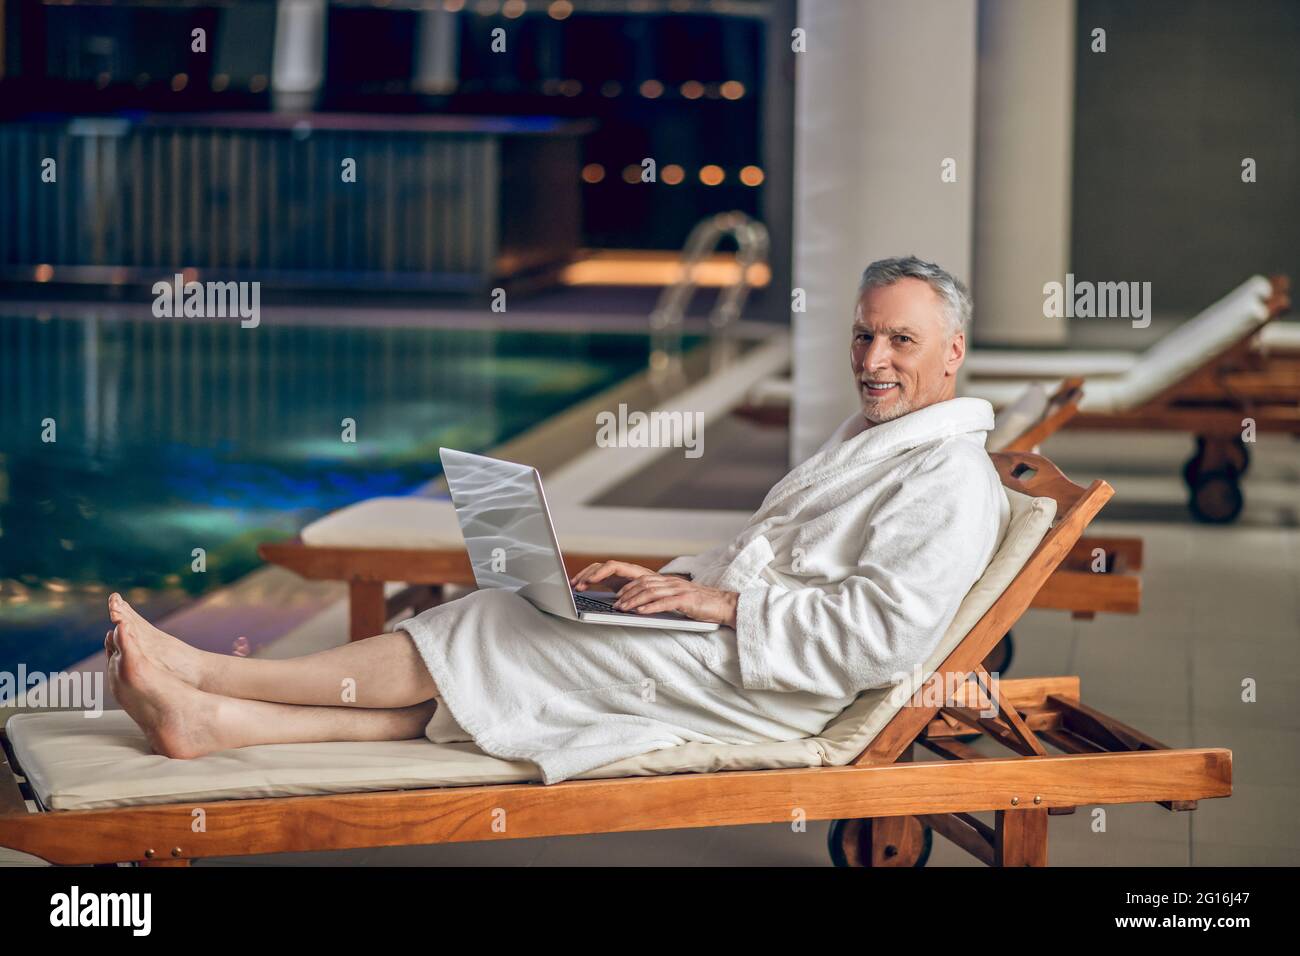 Un hombre barbudo de pelo gris en una bata de baño blanca que pasa tiempo en Internet Foto de stock